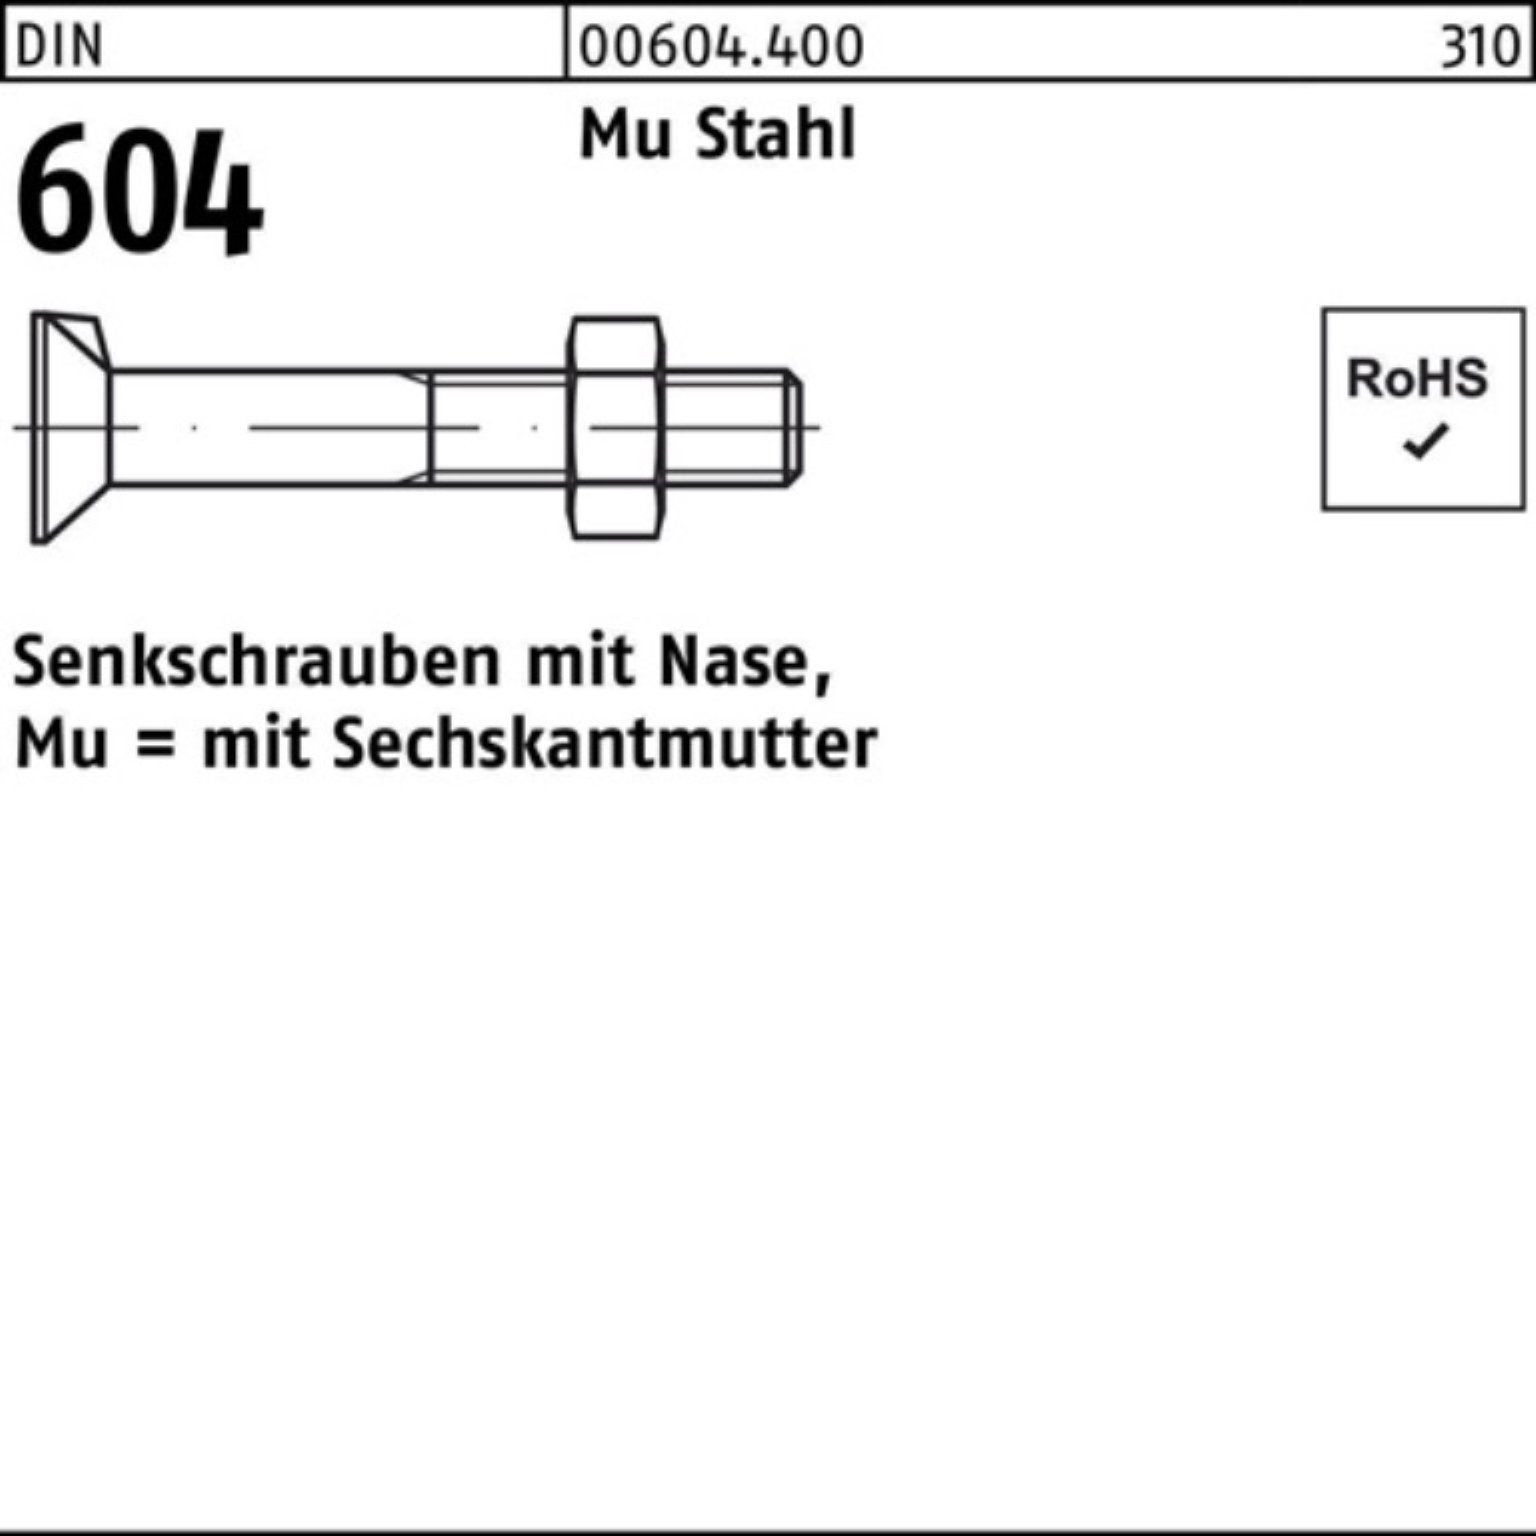 Reyher Senkschraube 200er Pack Senkschraube DIN 604 Nase/6-ktmutter M8x 45 Mu Stahl 4.6 20